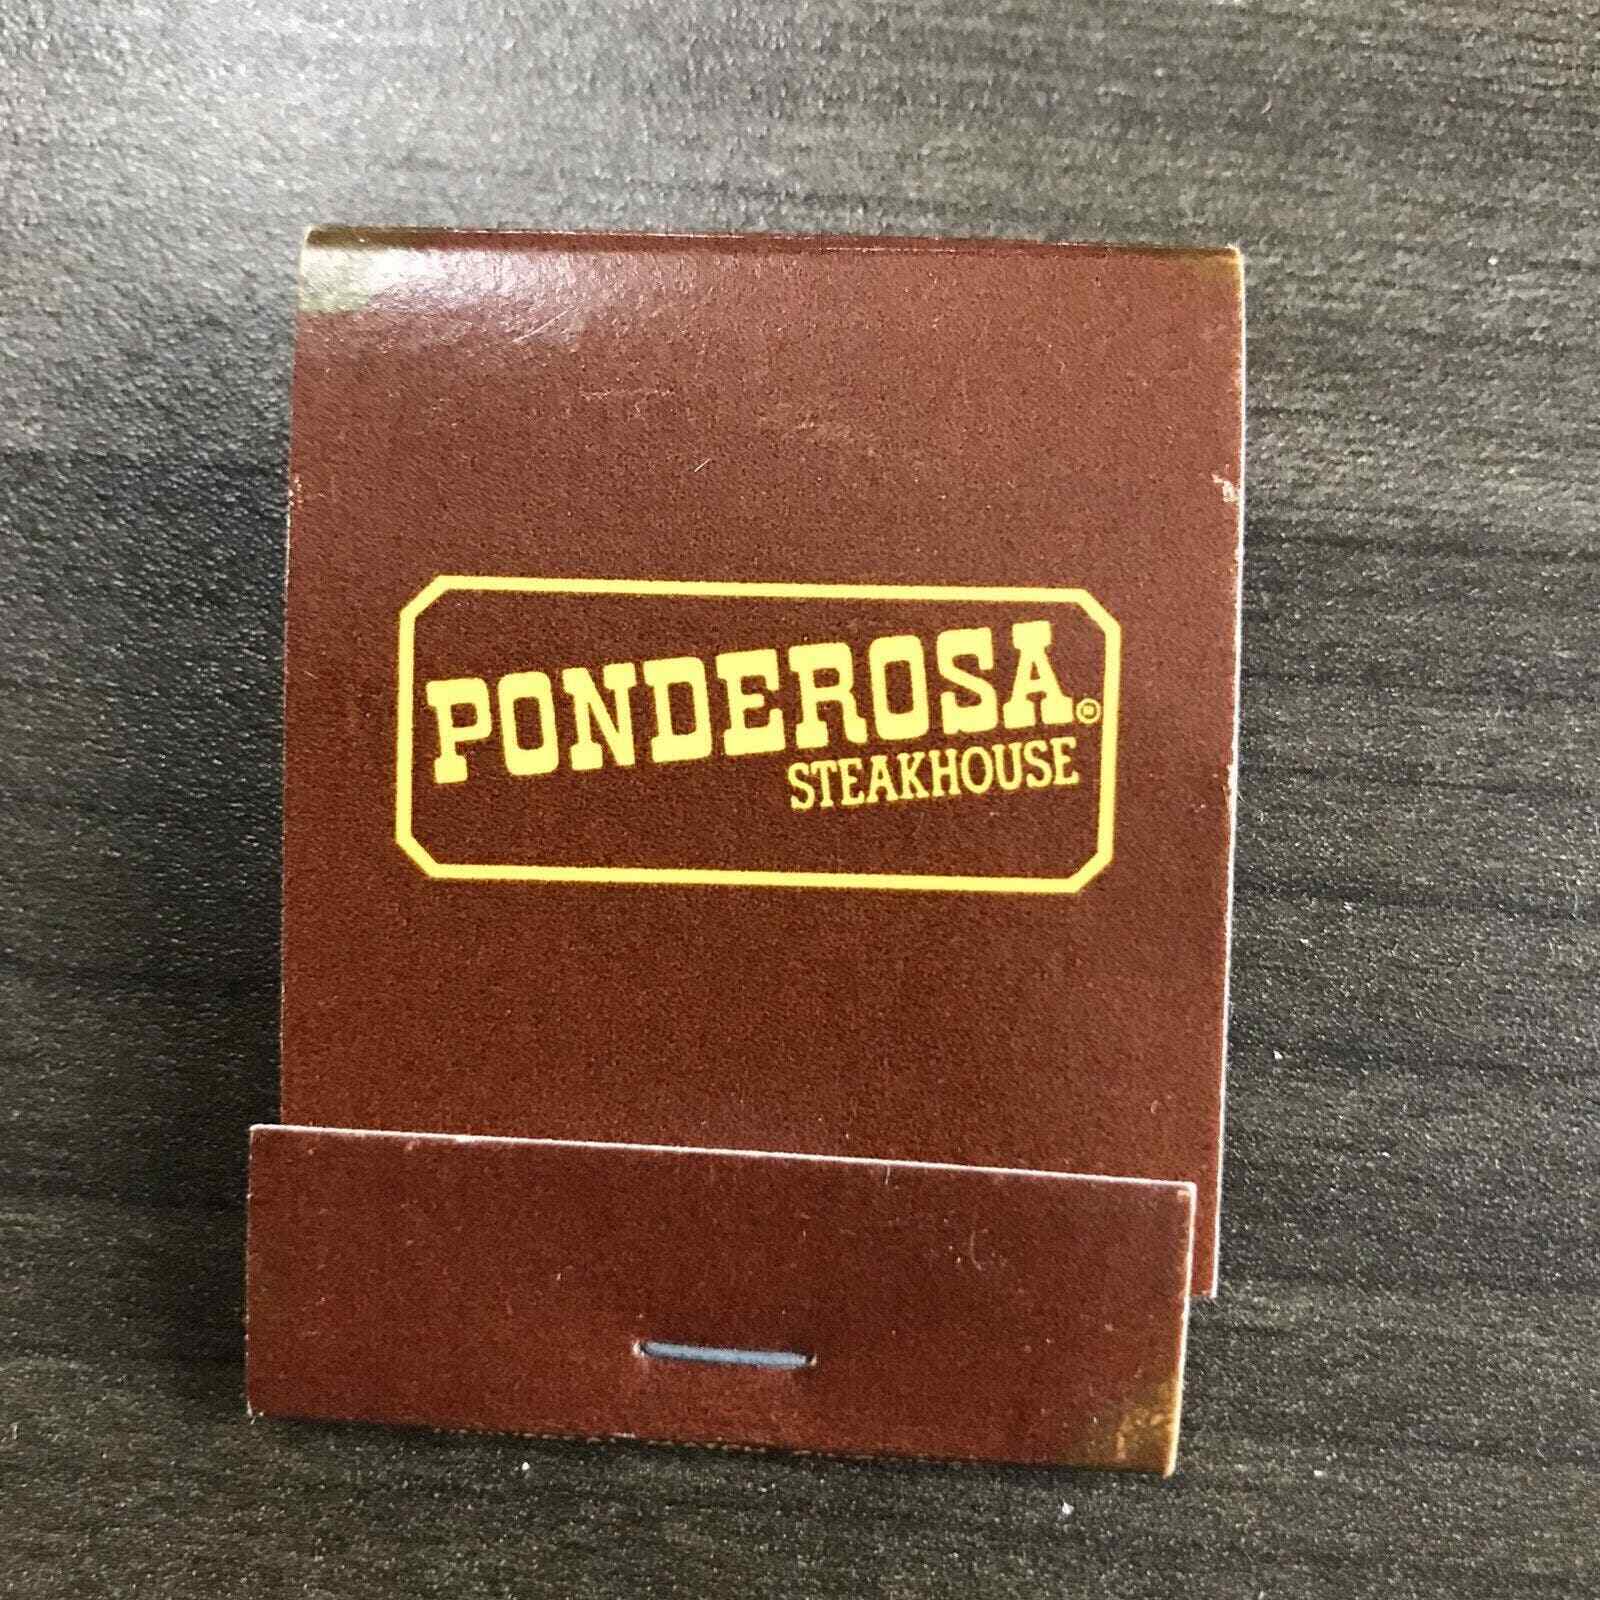 Vintage Matchbook Ponderosa Restaurant